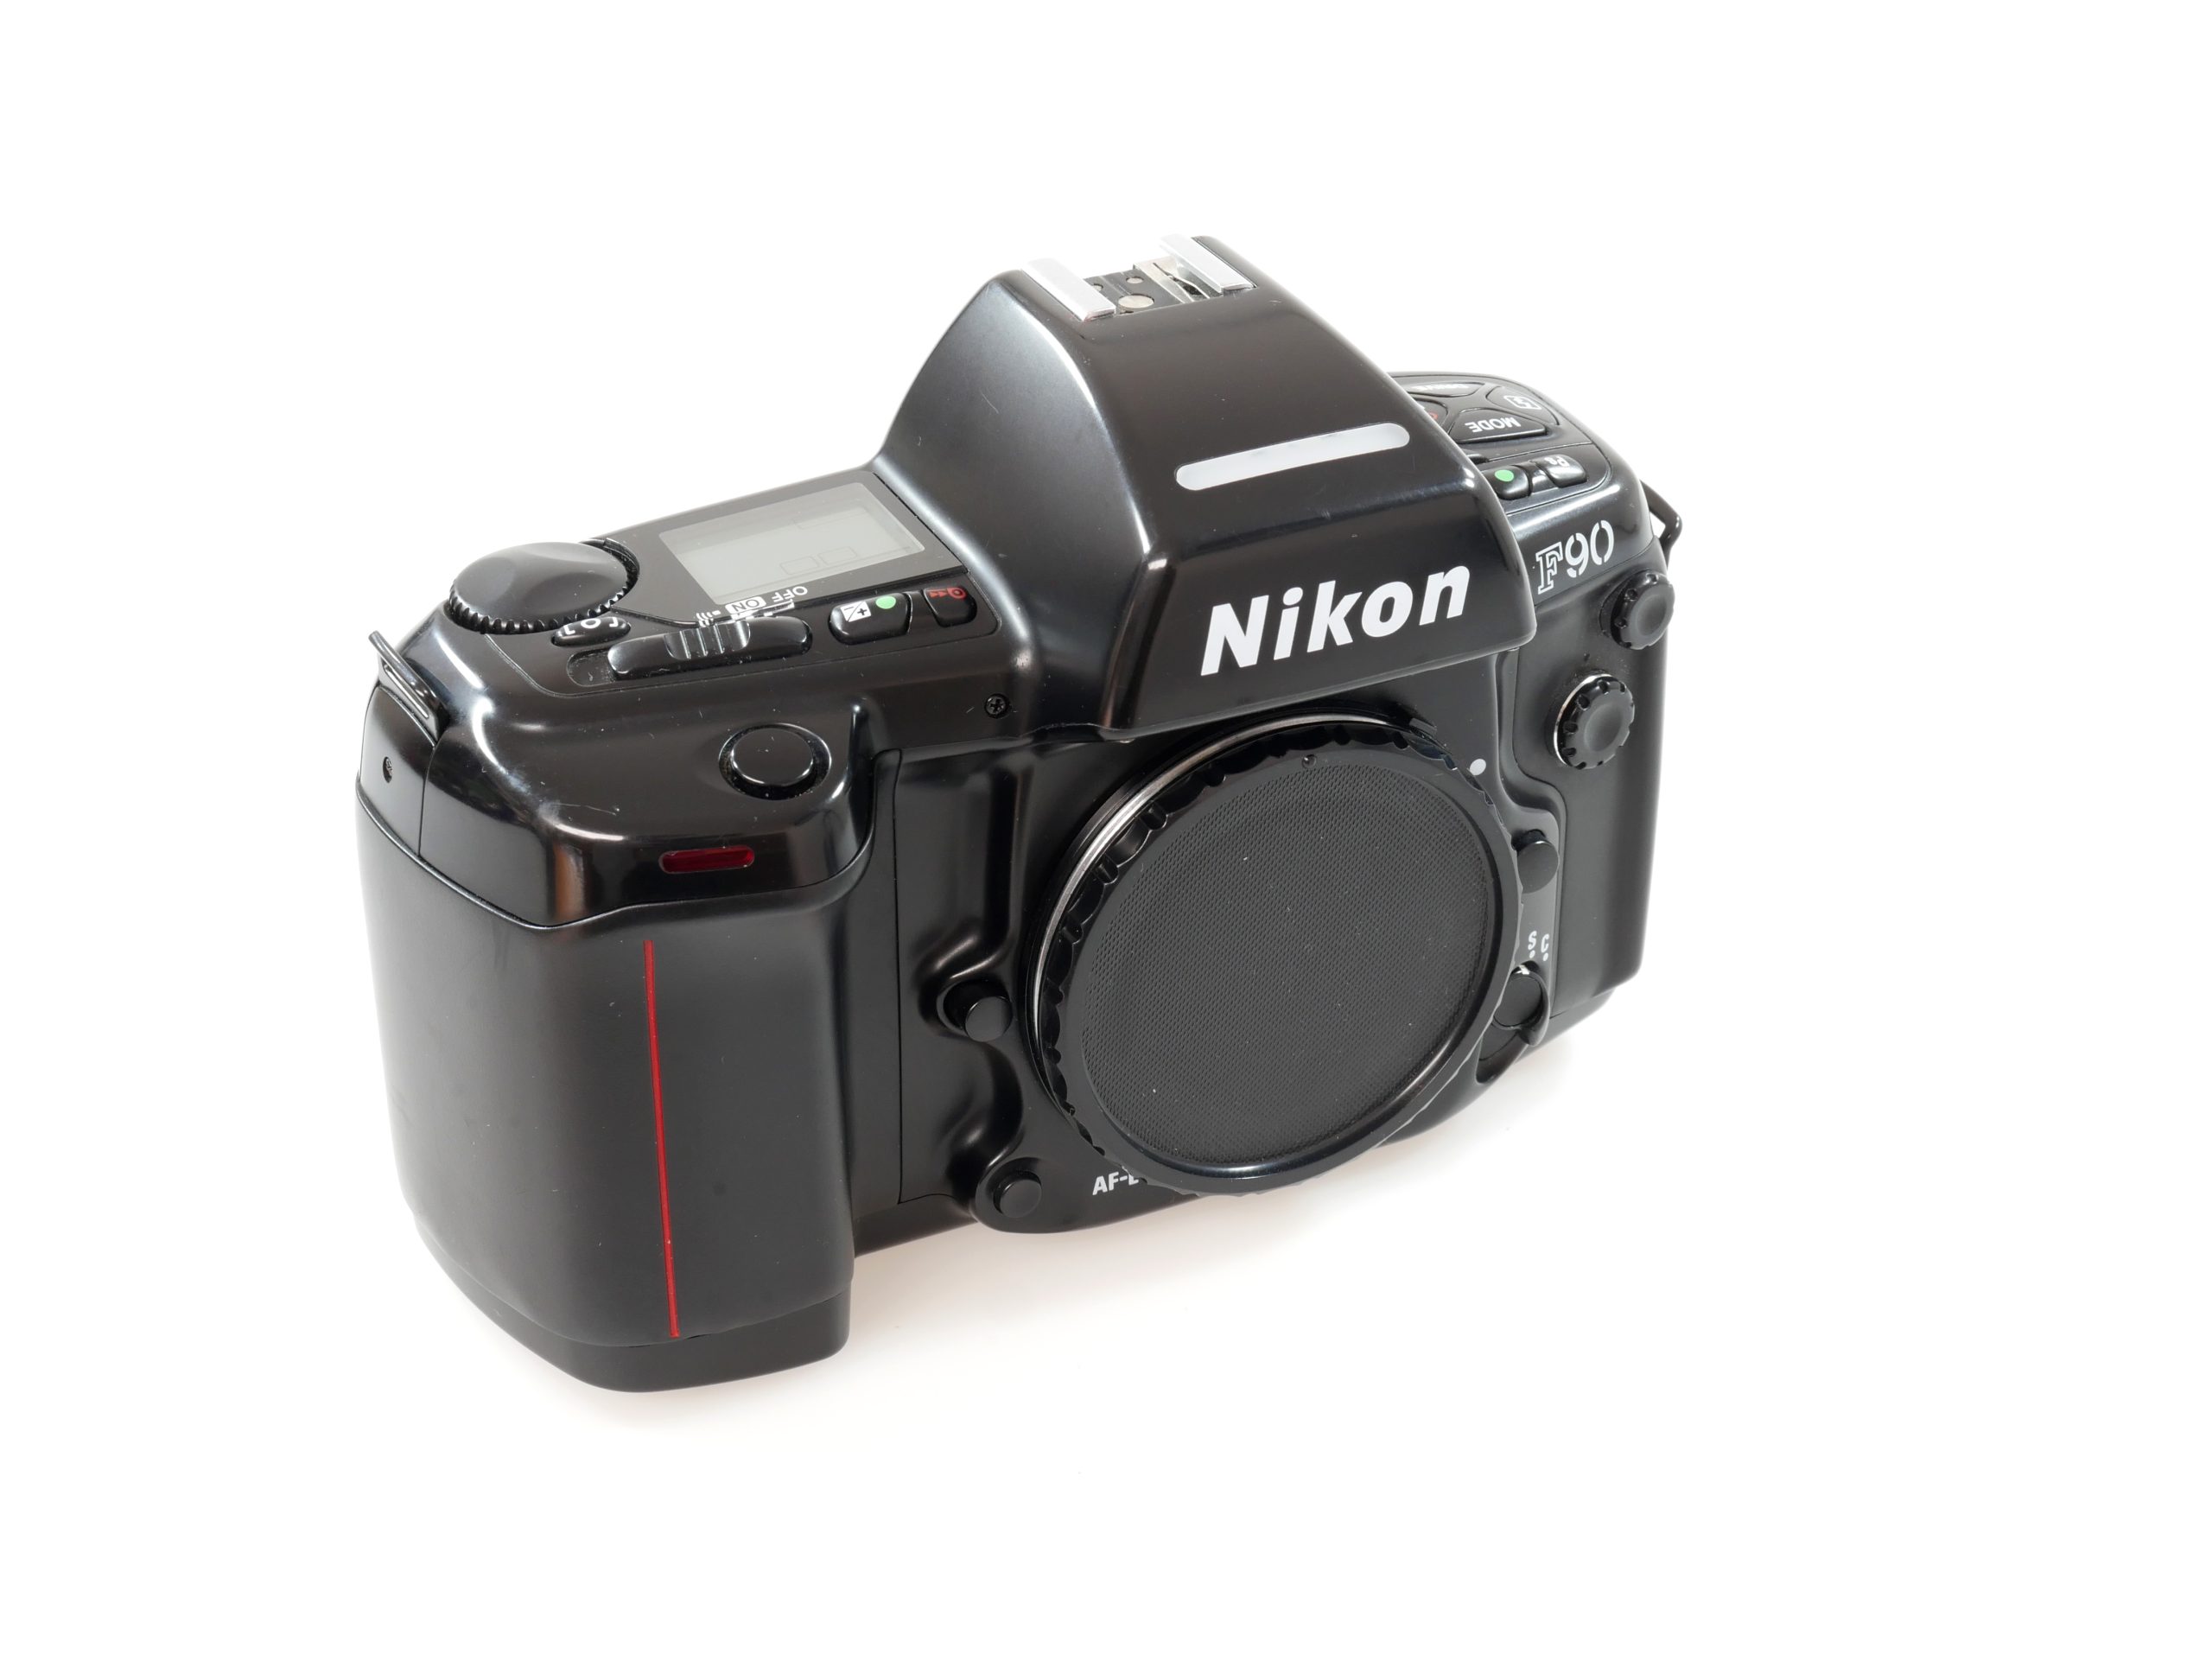 Nikon F90 – Analogue Cameras